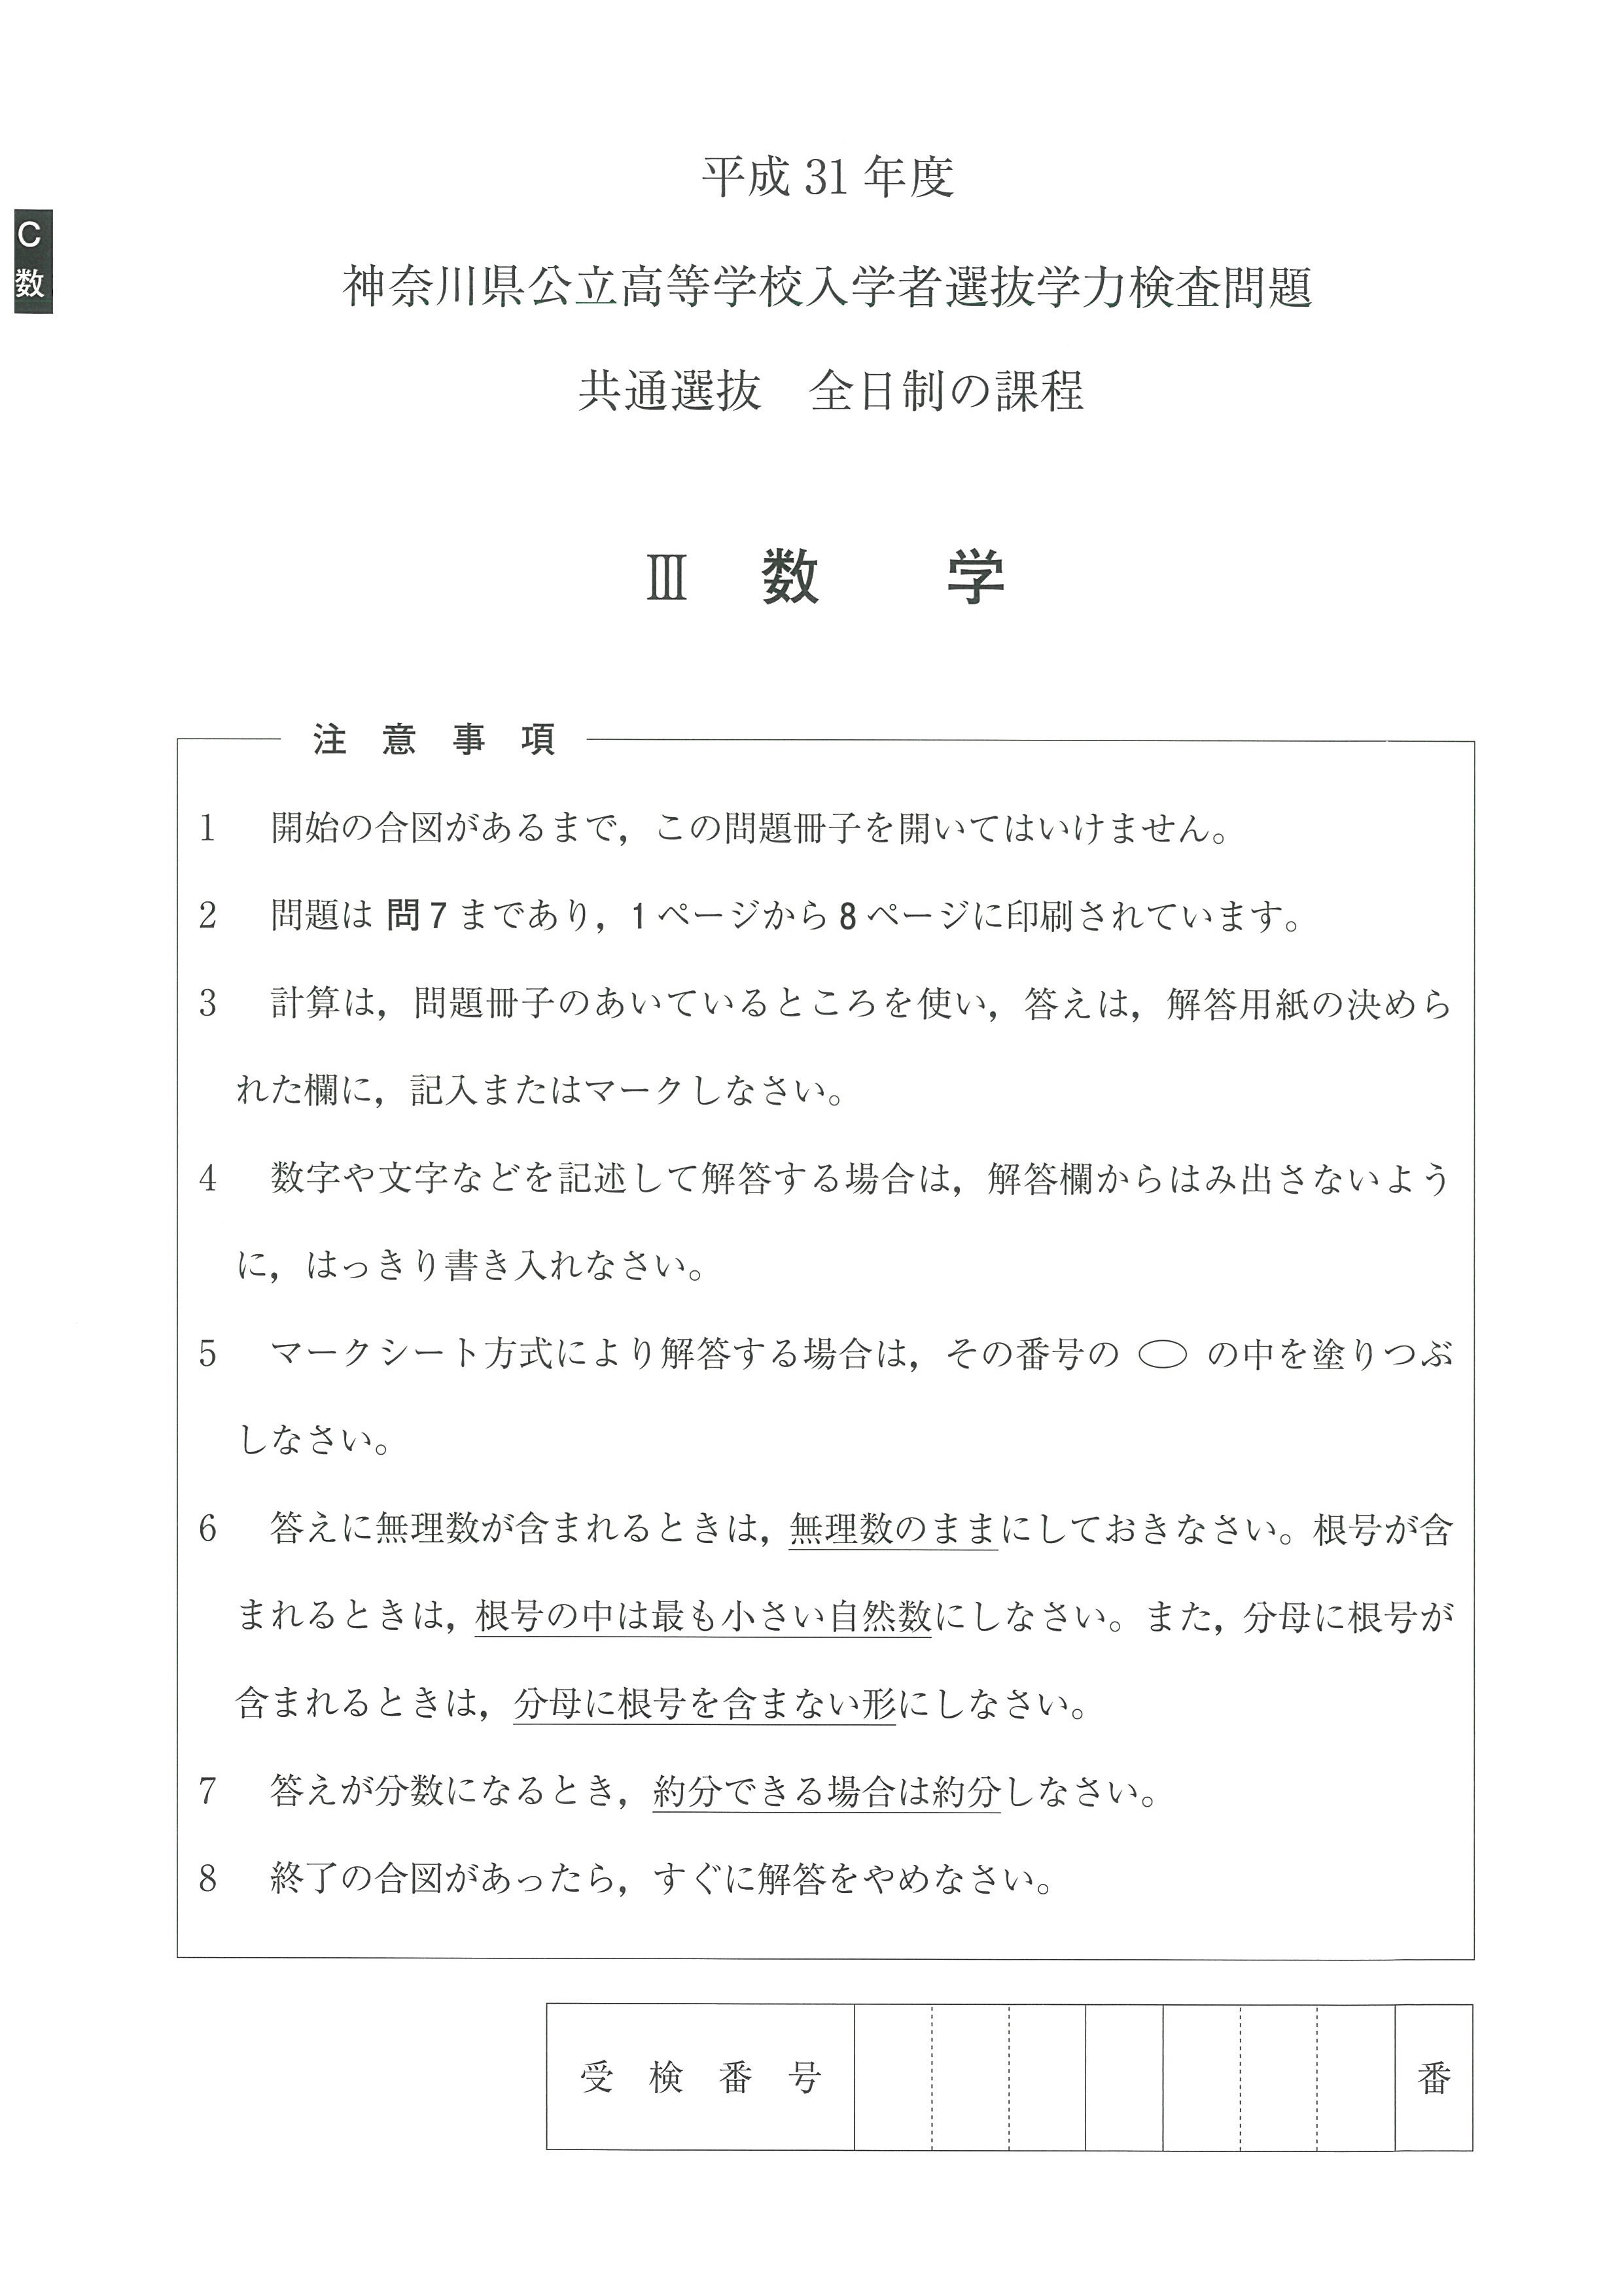 神奈川県公立高校入試問題分析と解説2019 平成31年度 闇の数学編